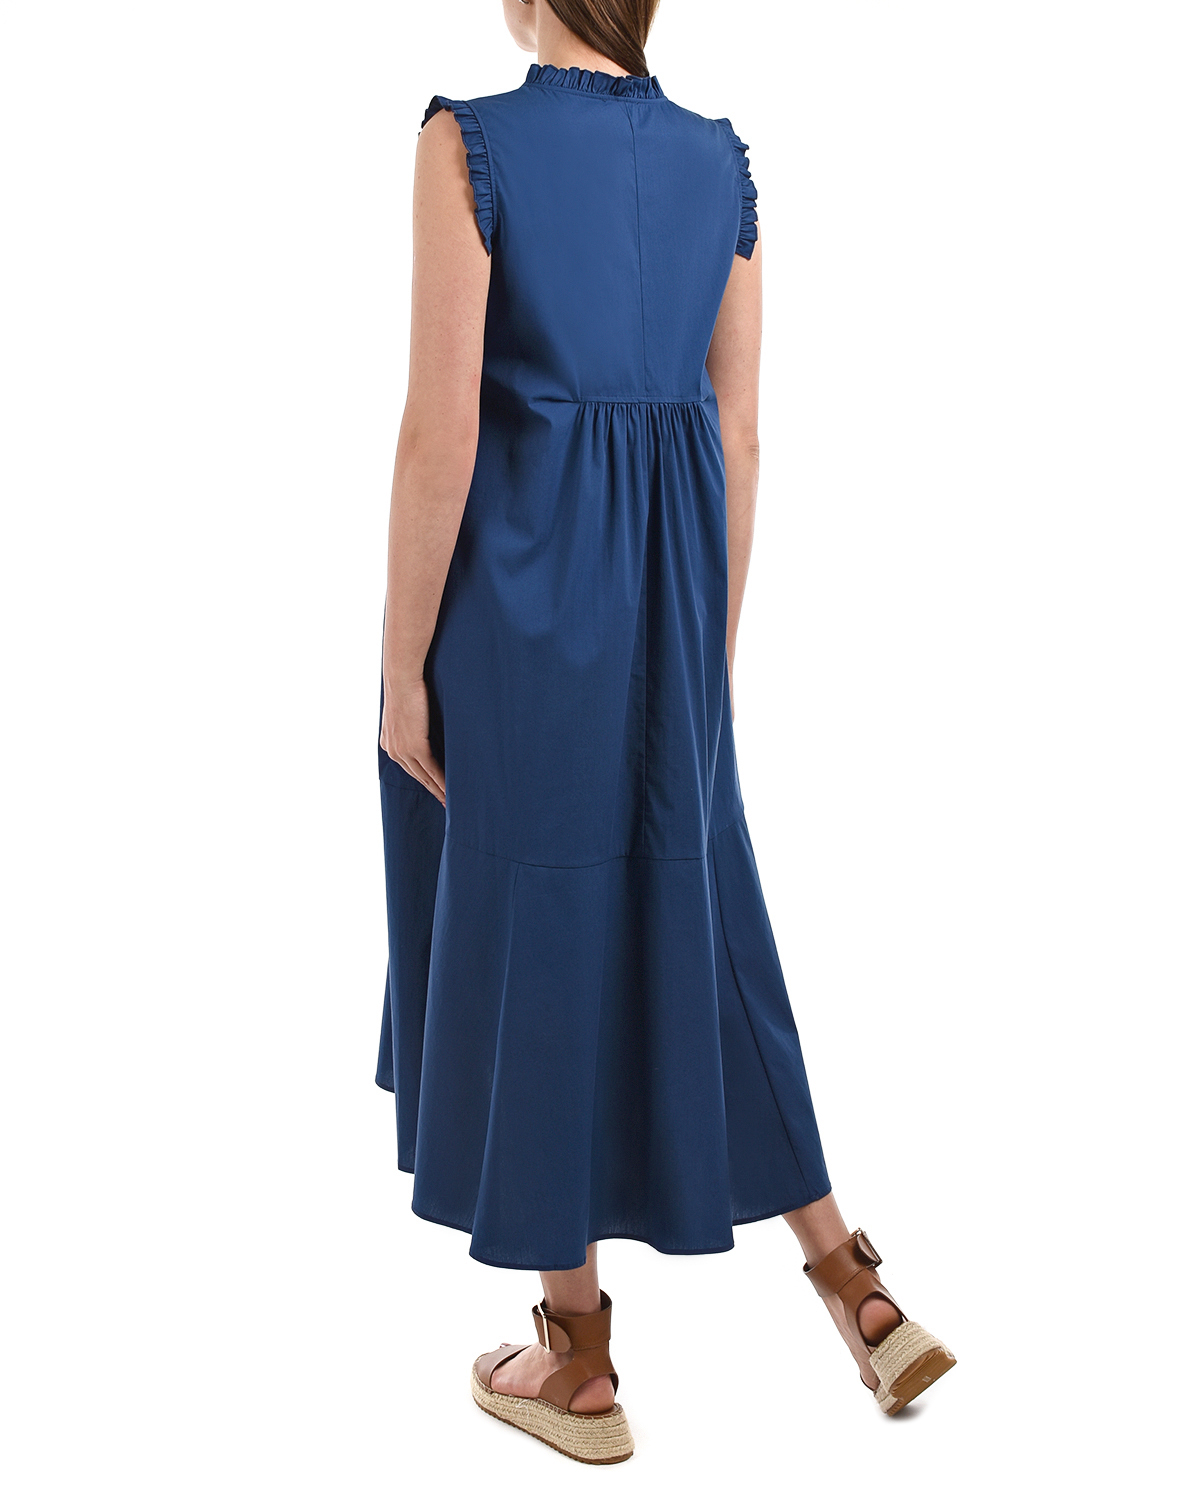 Синее платье с рюшами Attesa, размер 38, цвет синий - фото 3